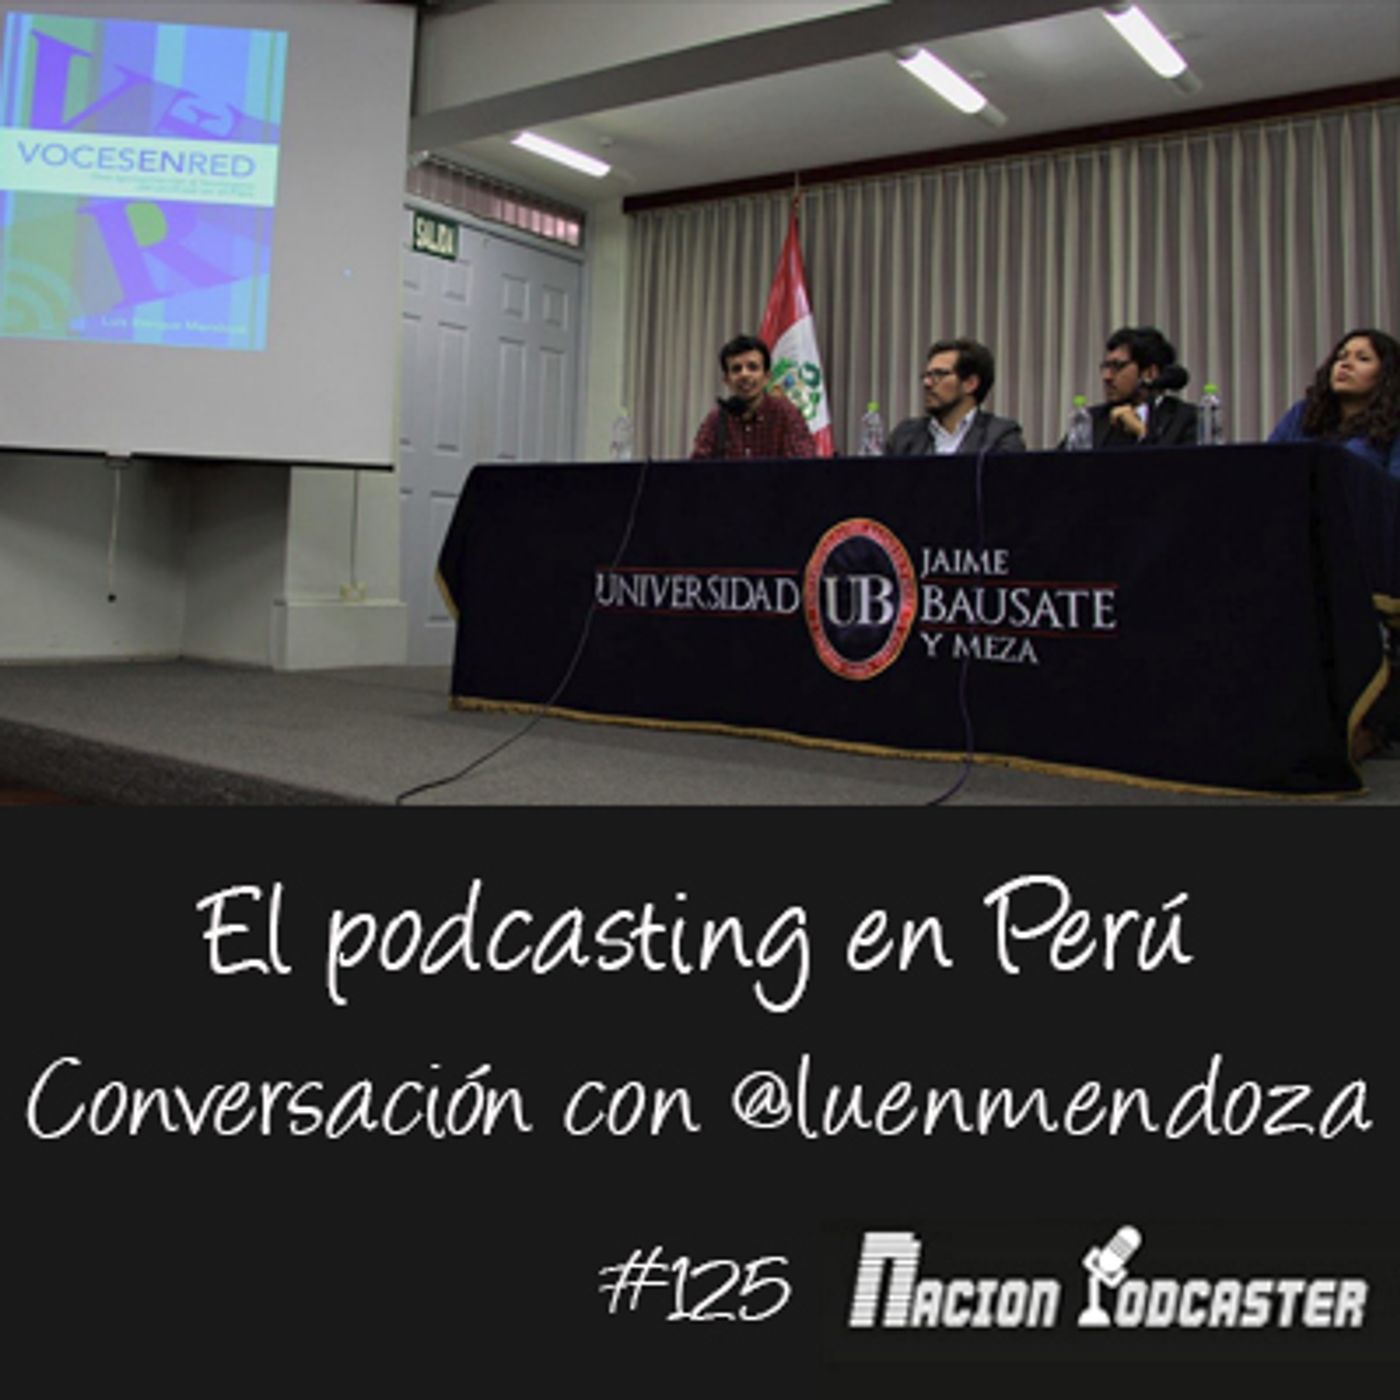 El podcasting en Perú con @luenmendoza